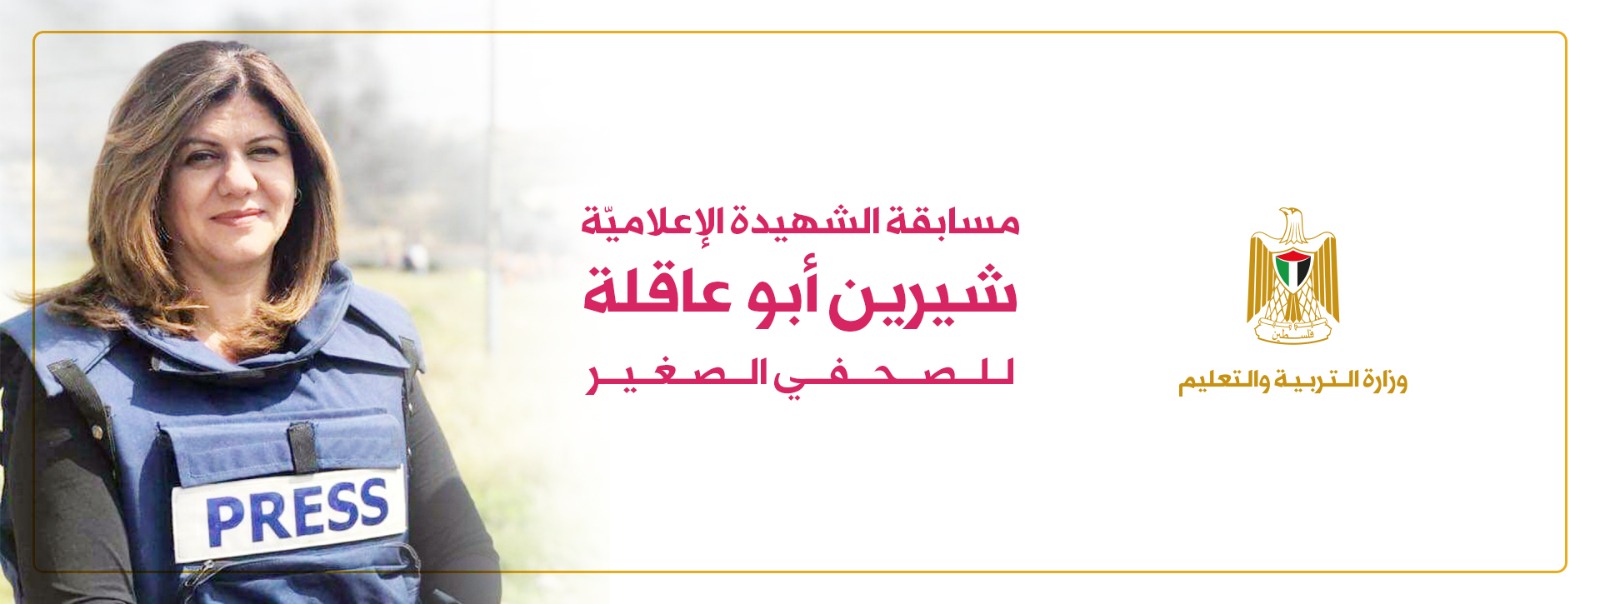 التربية تطلق جائزة الشهيدة الإعلامية "شيرين أبو عاقلة" للصحفي الصغير